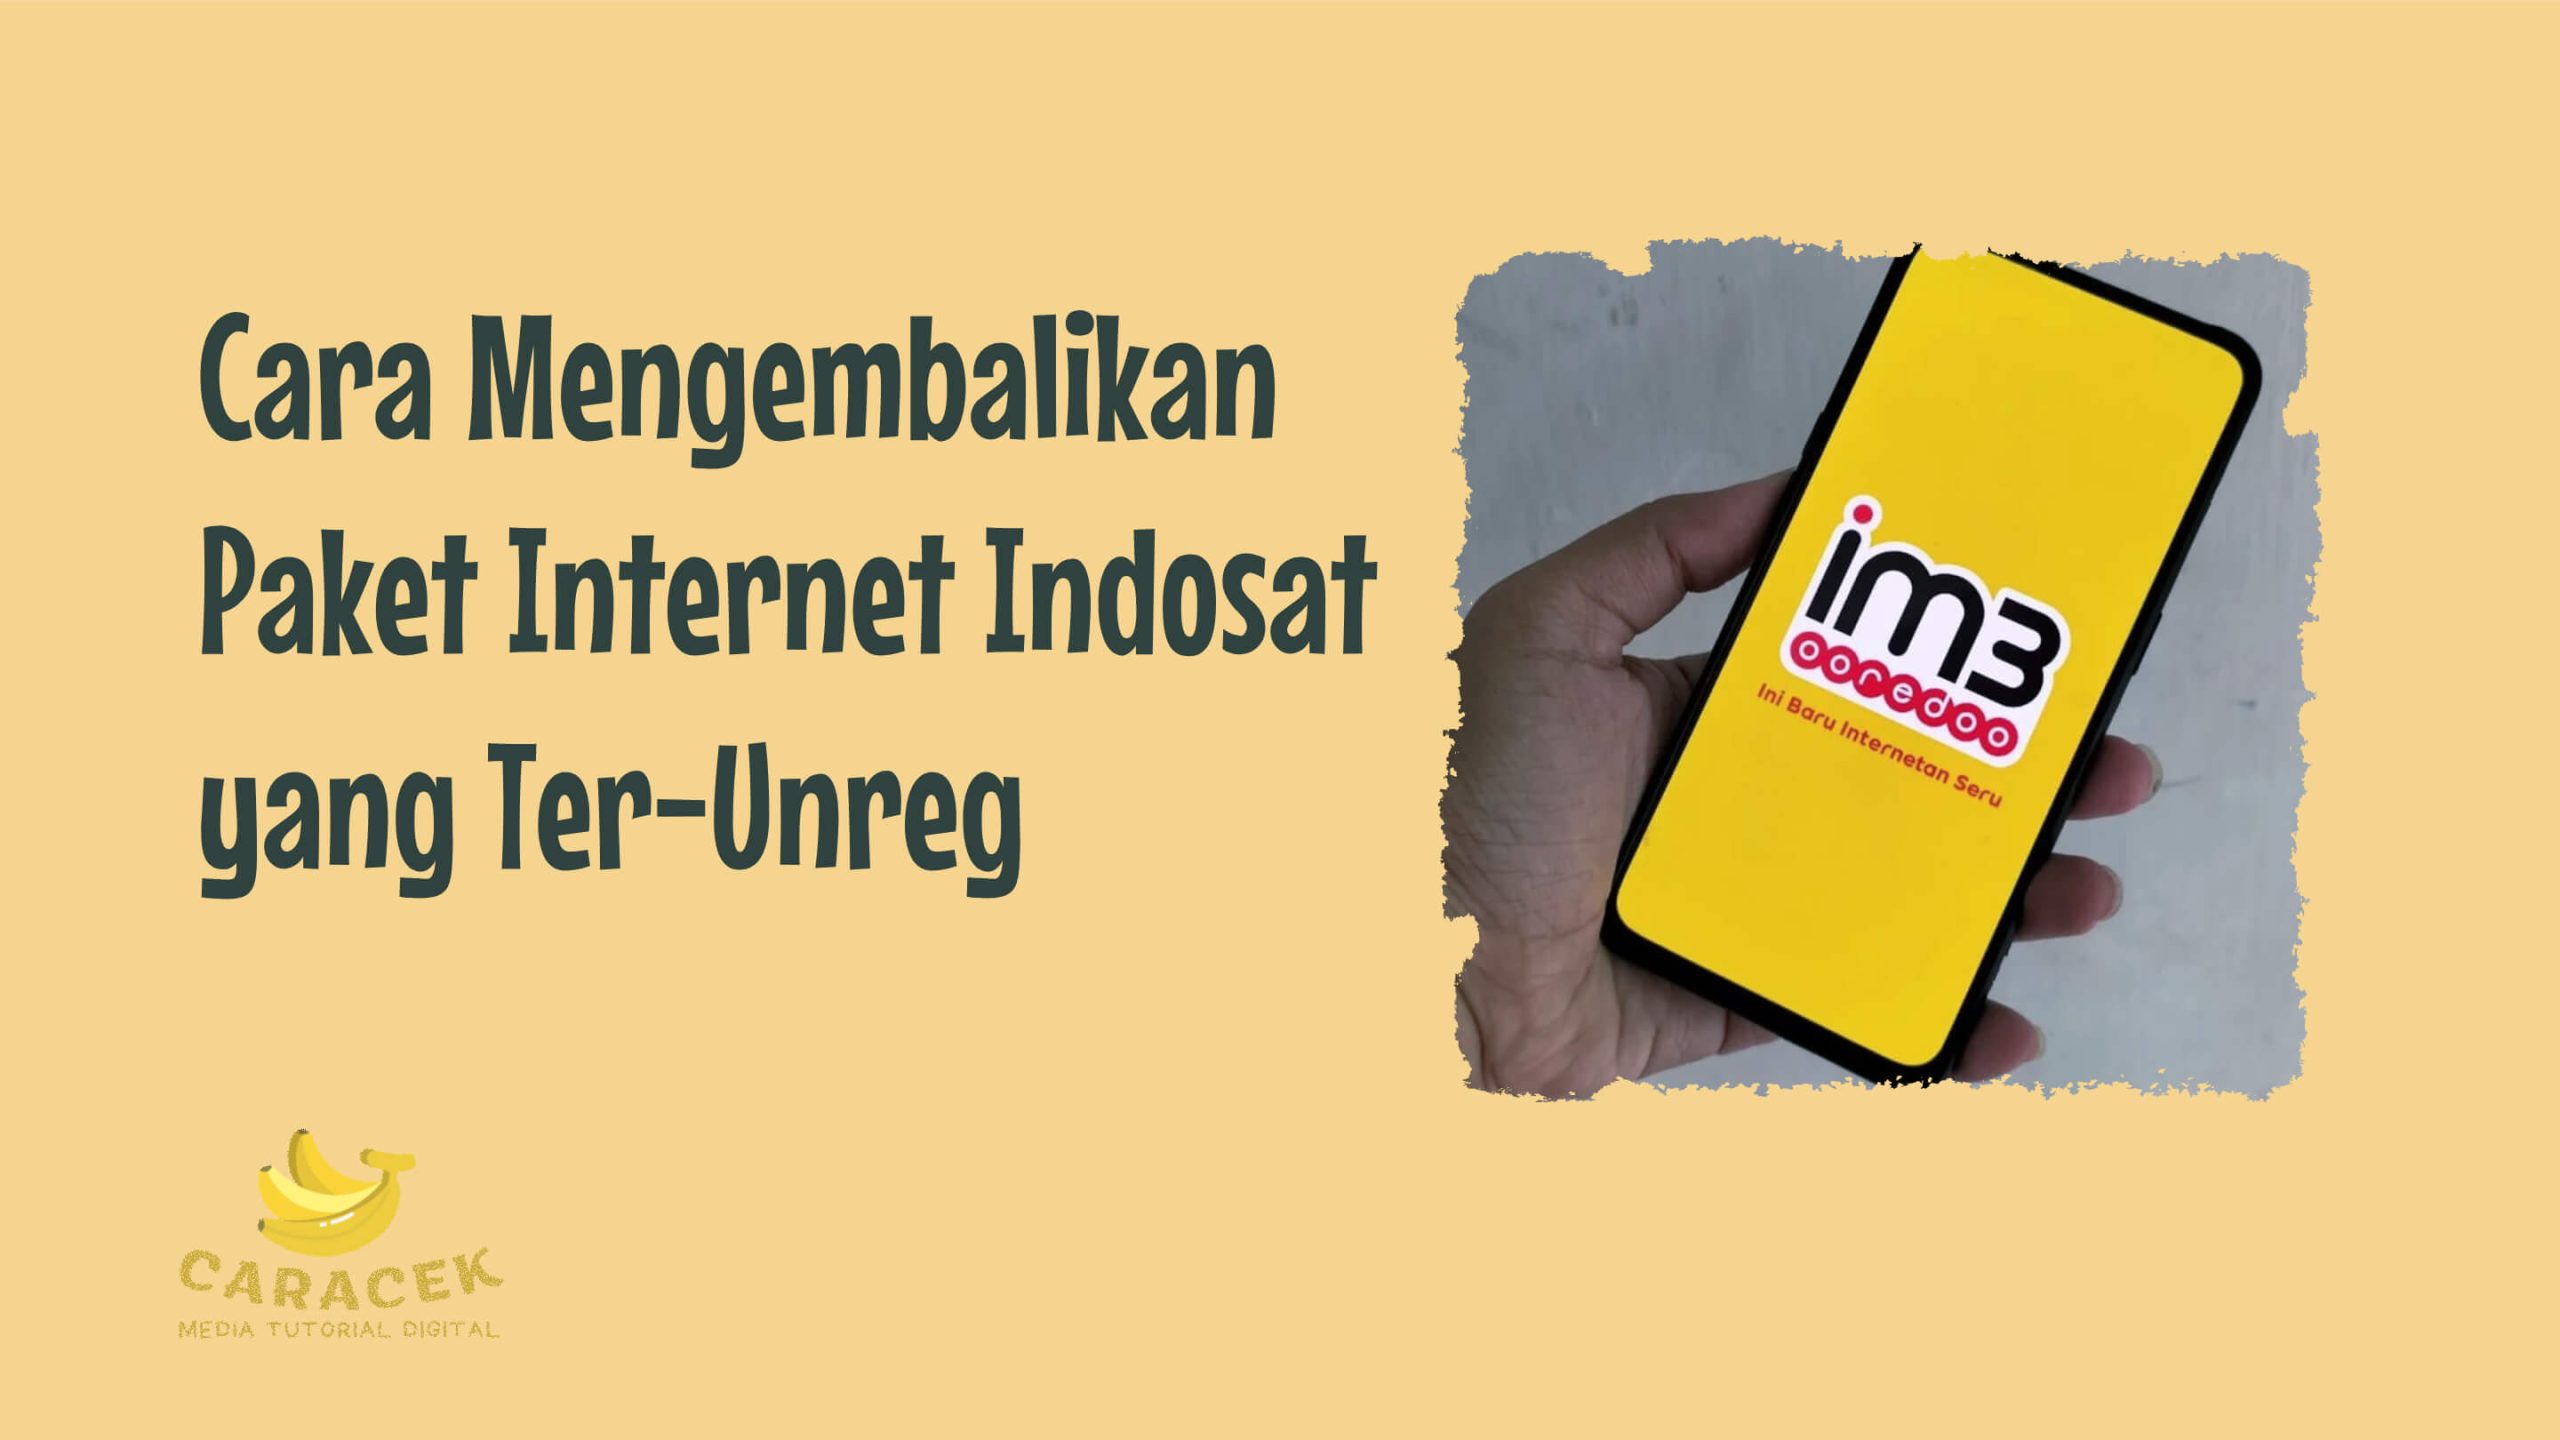 Cara Mengembalikan Paket Internet Indosat yang Ter-Unreg